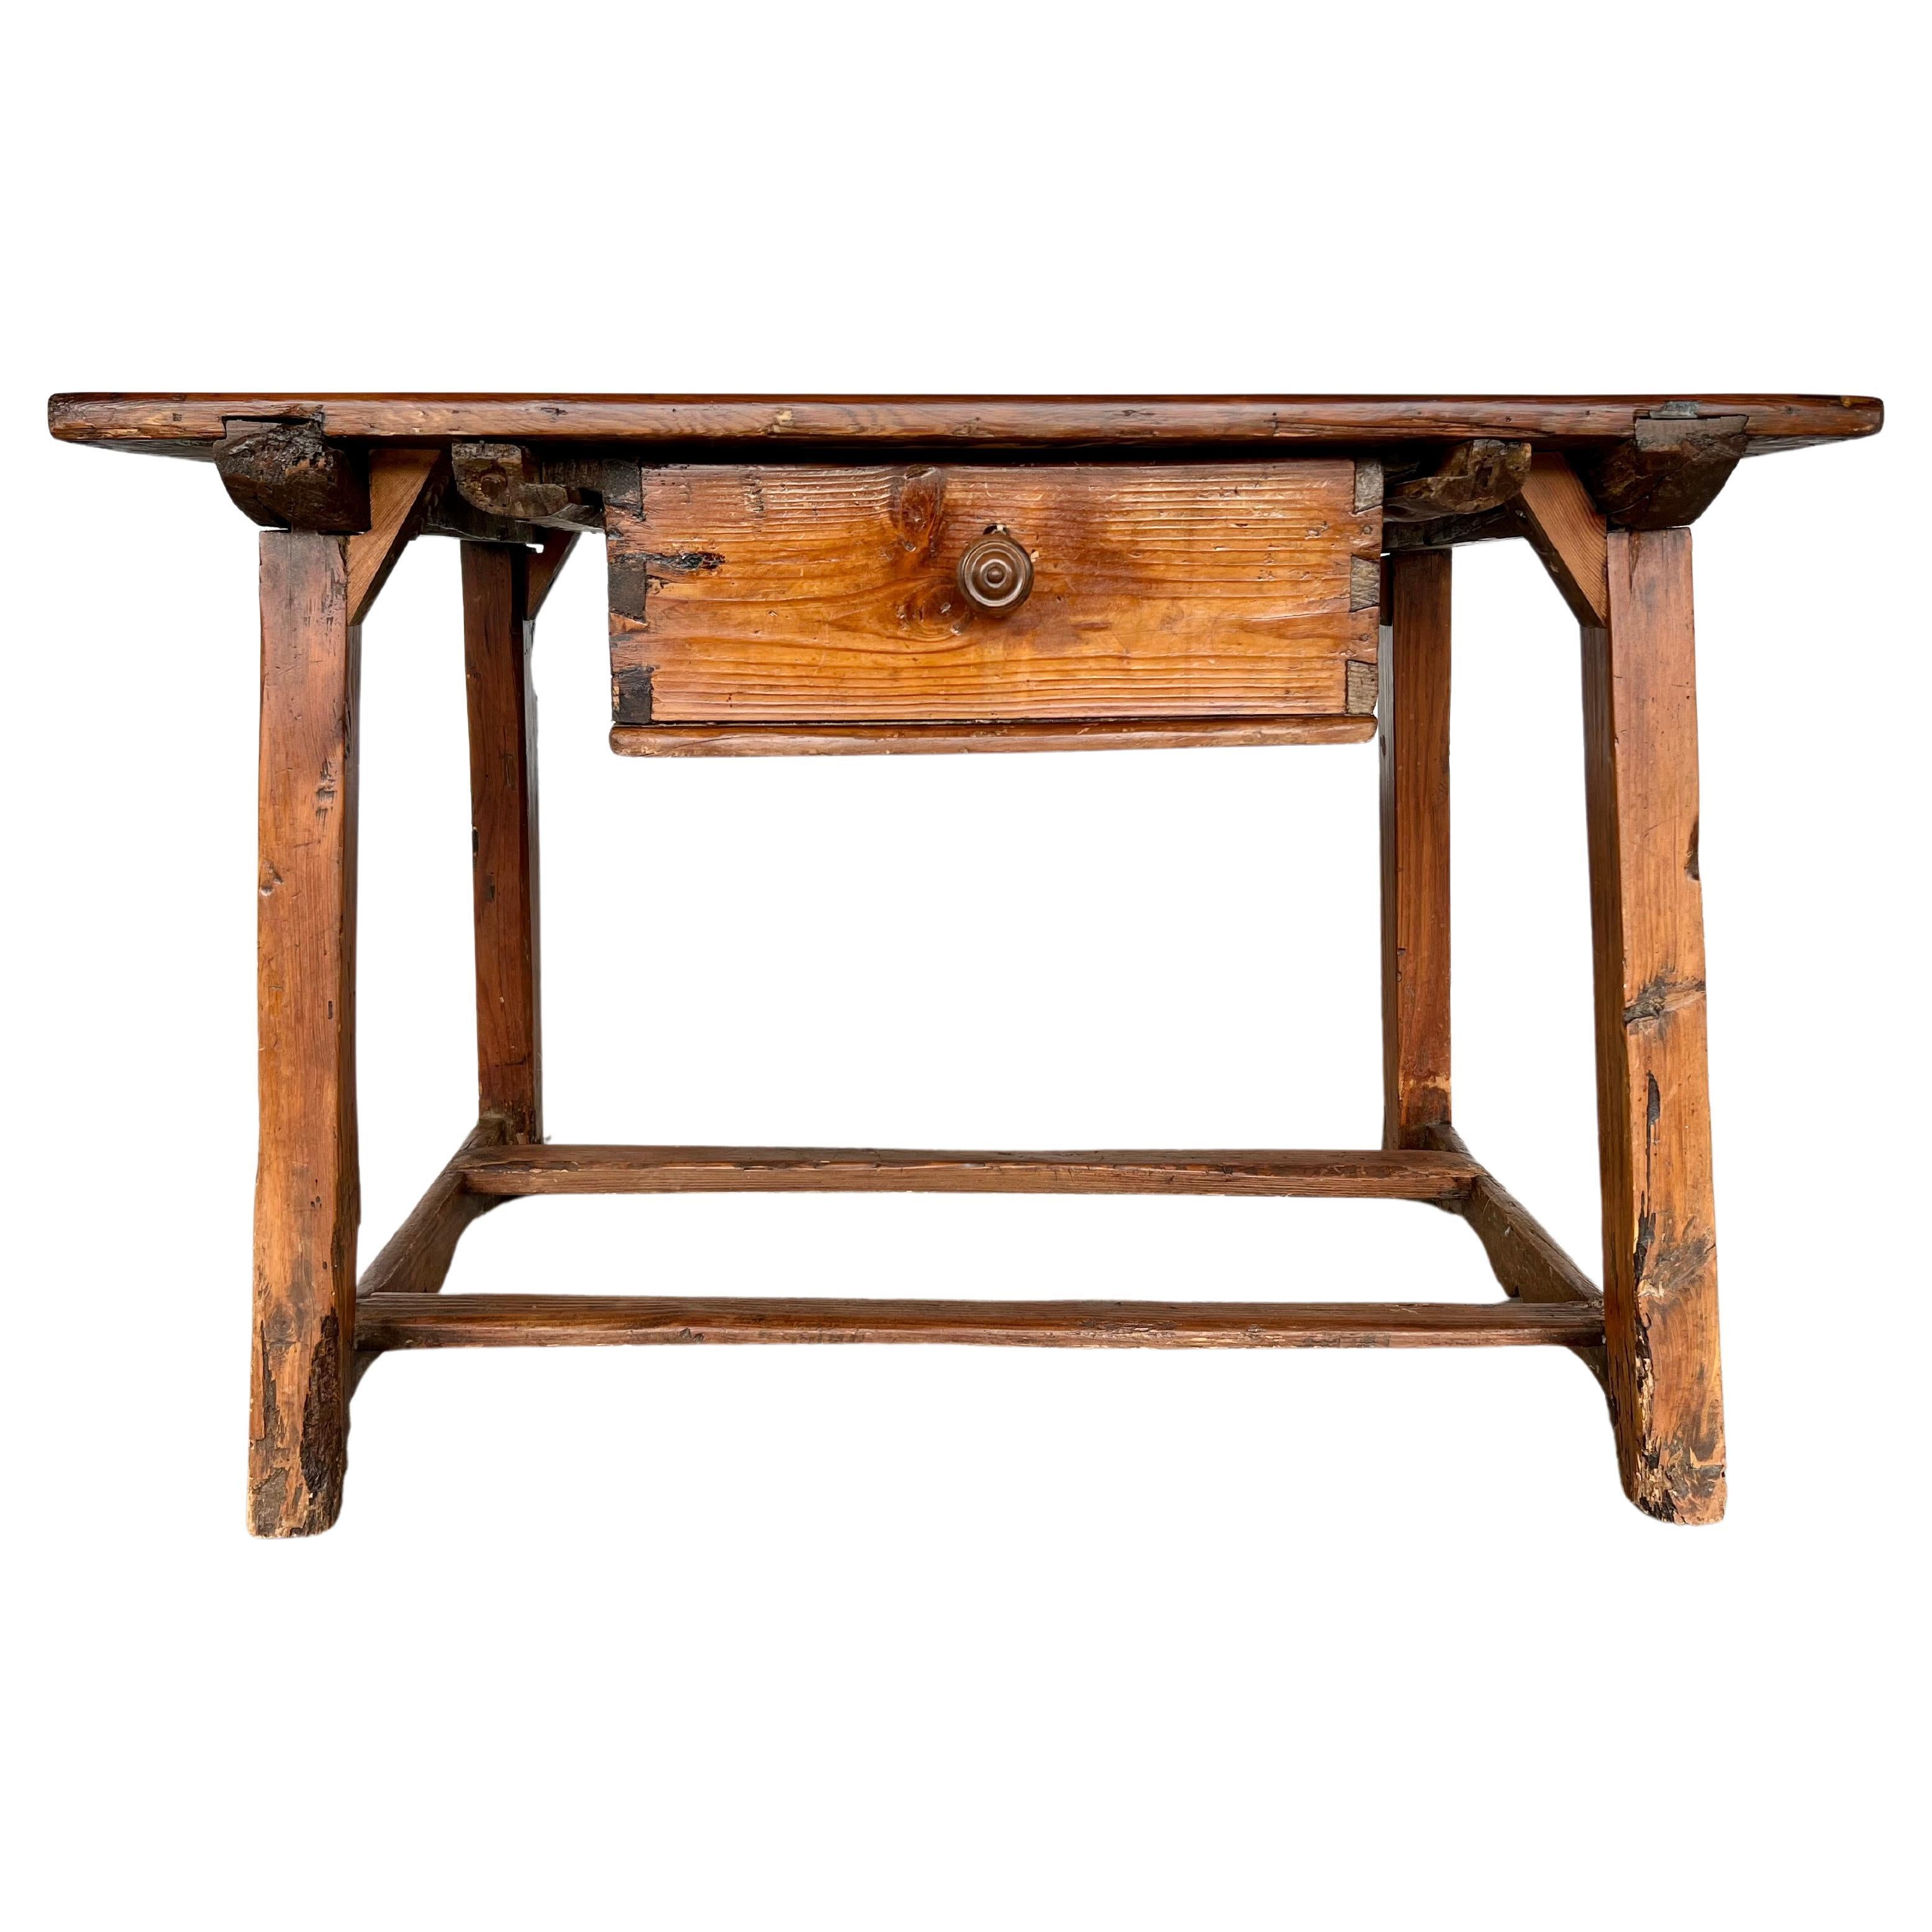 Ancienne table de travail ou table de cuisine espagnole rustique du 17e siècle avec un seul tiroir